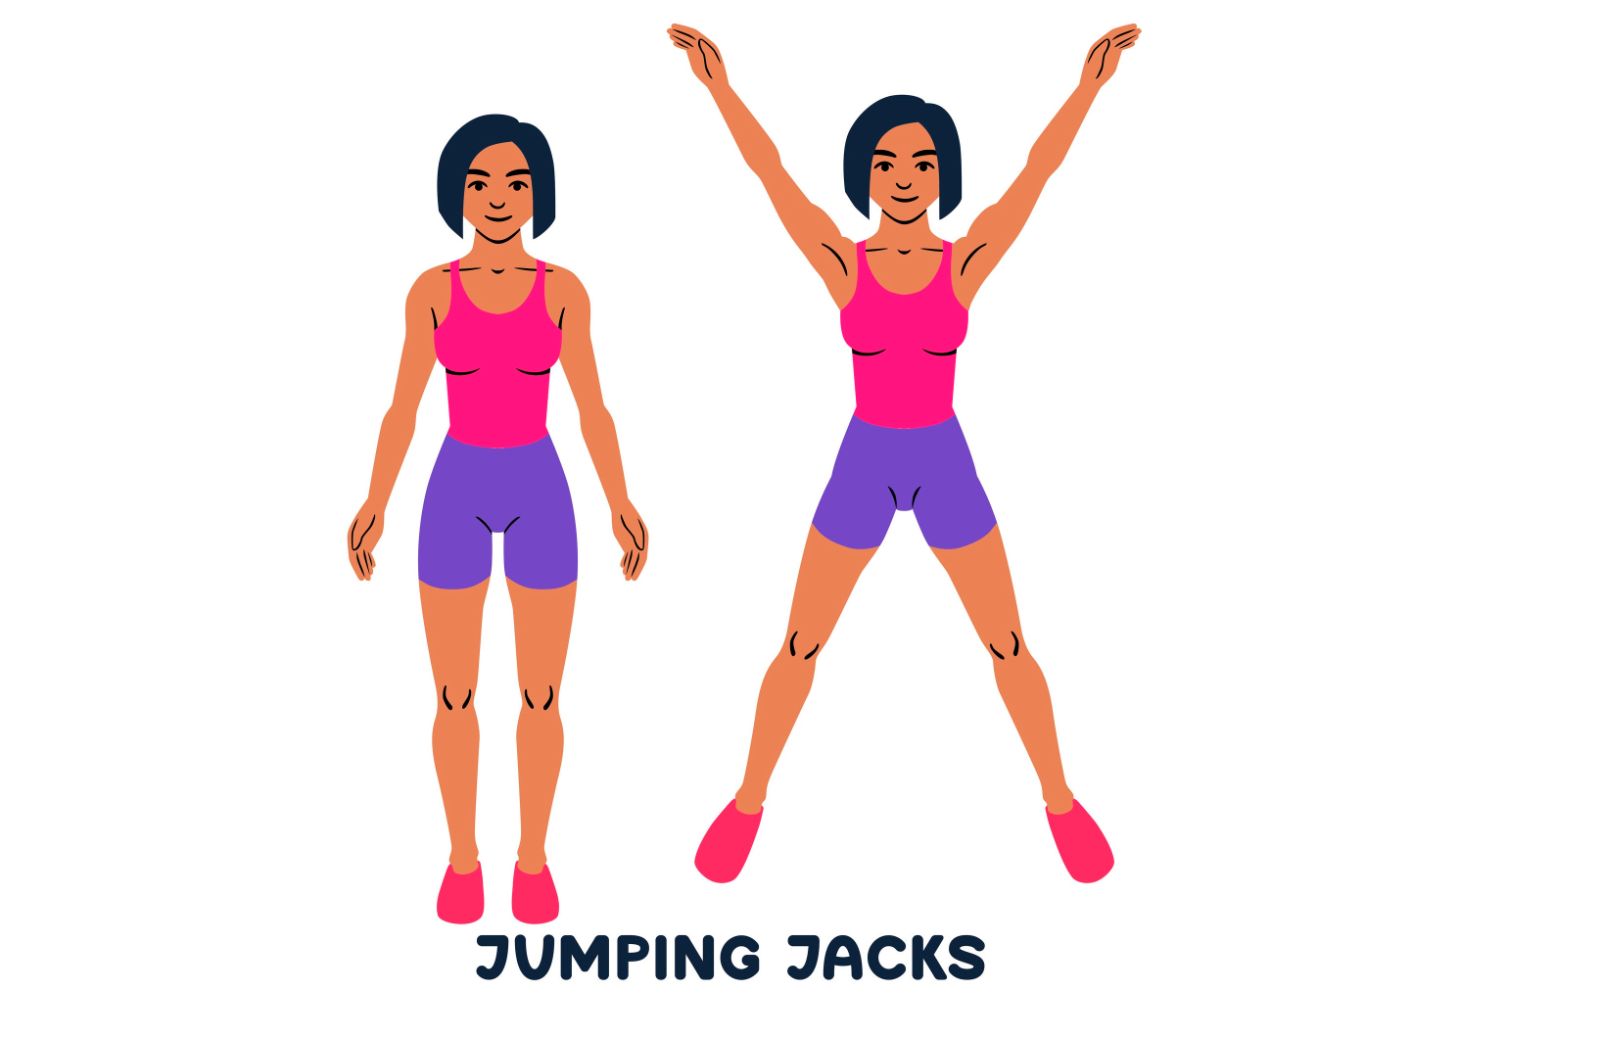 Quante calorie si bruciano praticando il Jumping jacks?